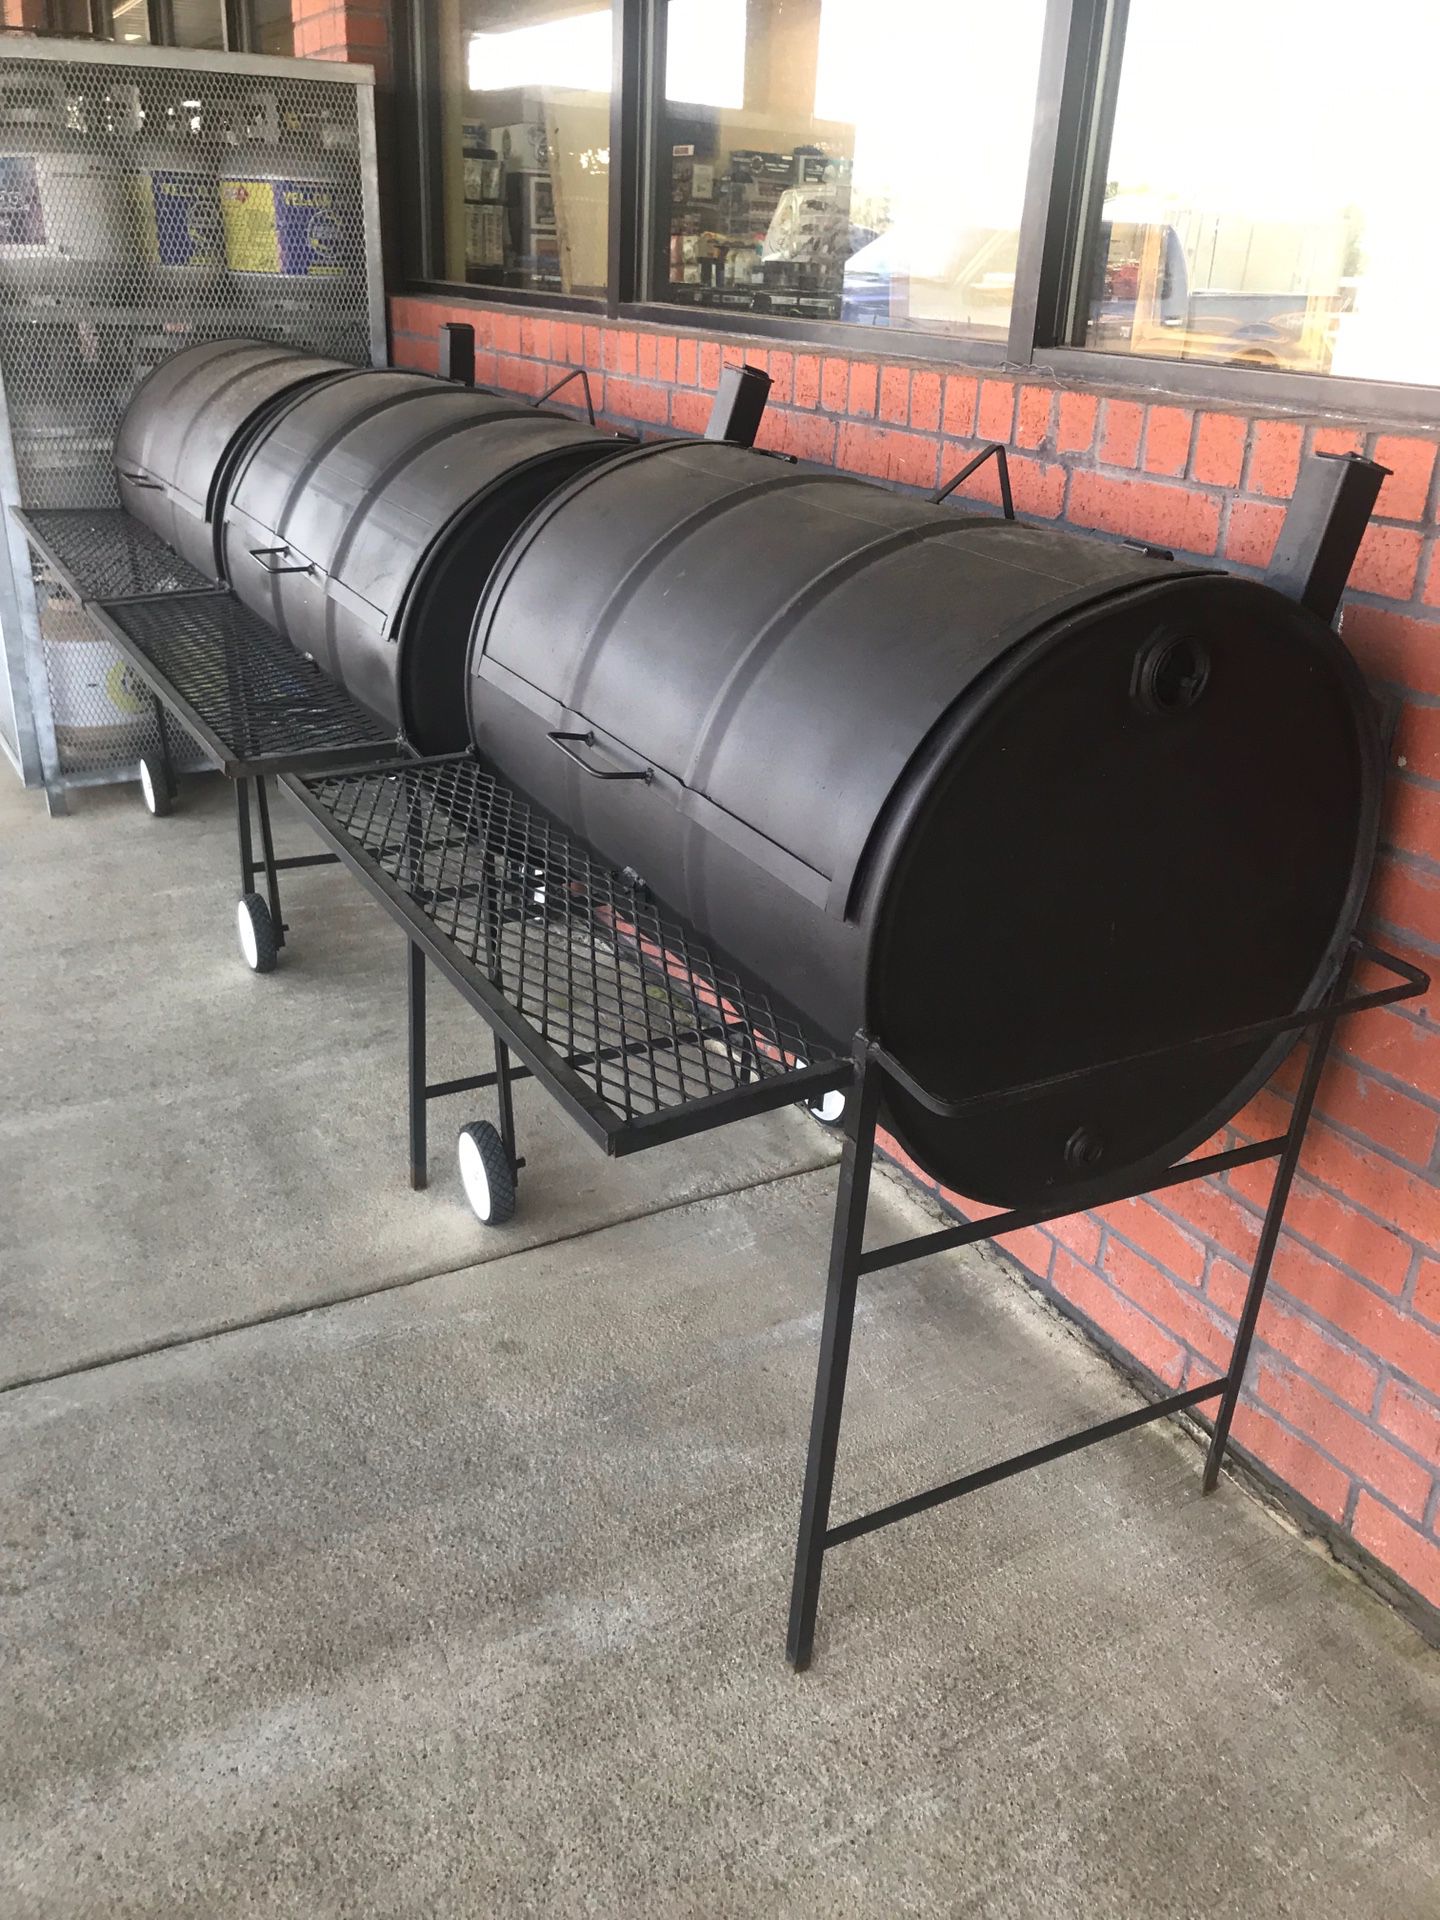 New 2020 Barrel BBQ Pit